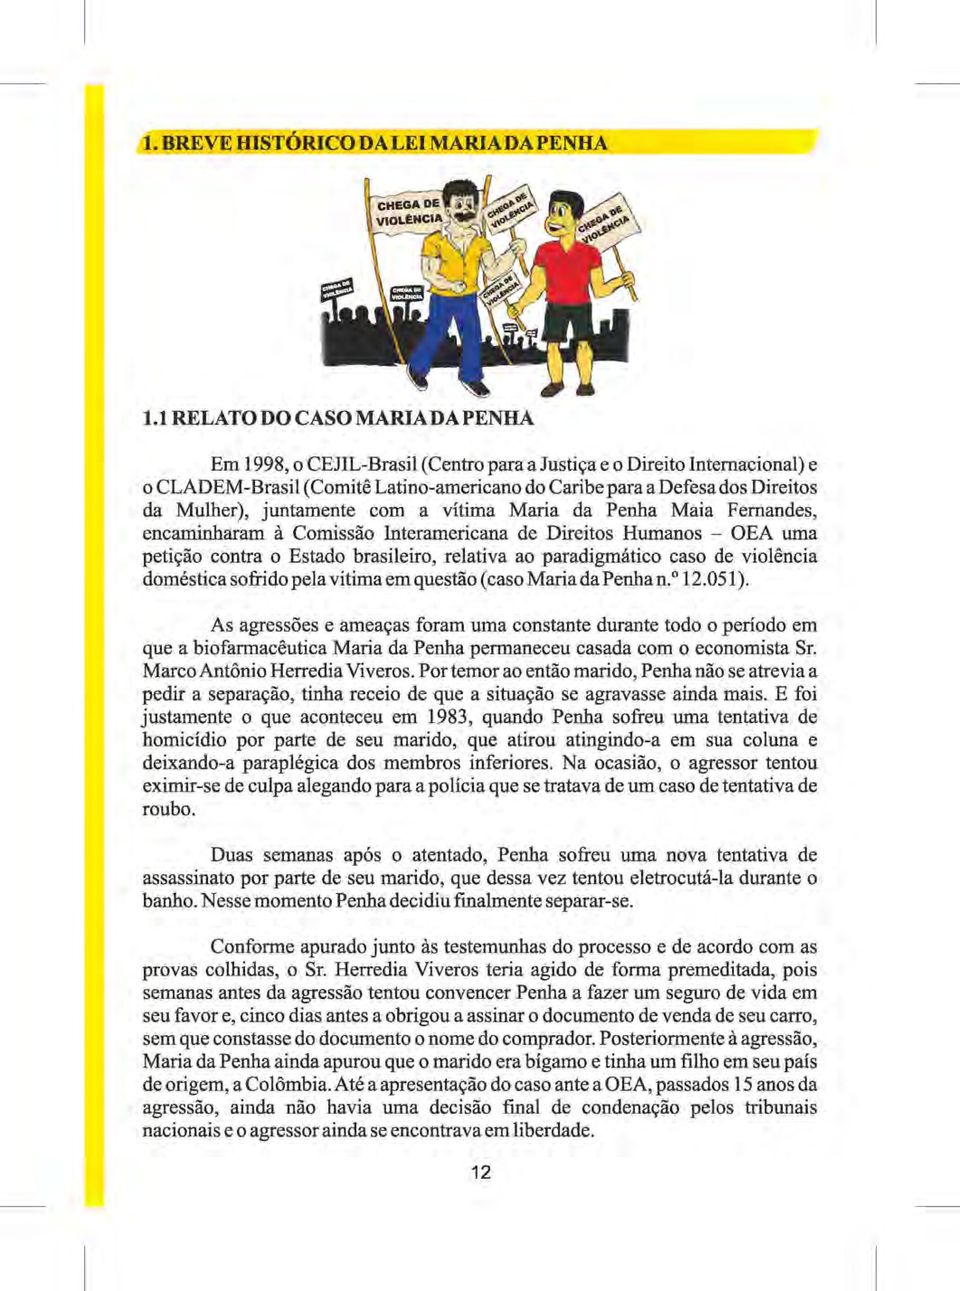 juntamente com a vítima Maria da Penha Maia Fernandes, encaminharam à Comissão Interamericana de Direitos Humanos - OEA uma petição contra o Estado brasileiro, relativa ao paradigmático caso de